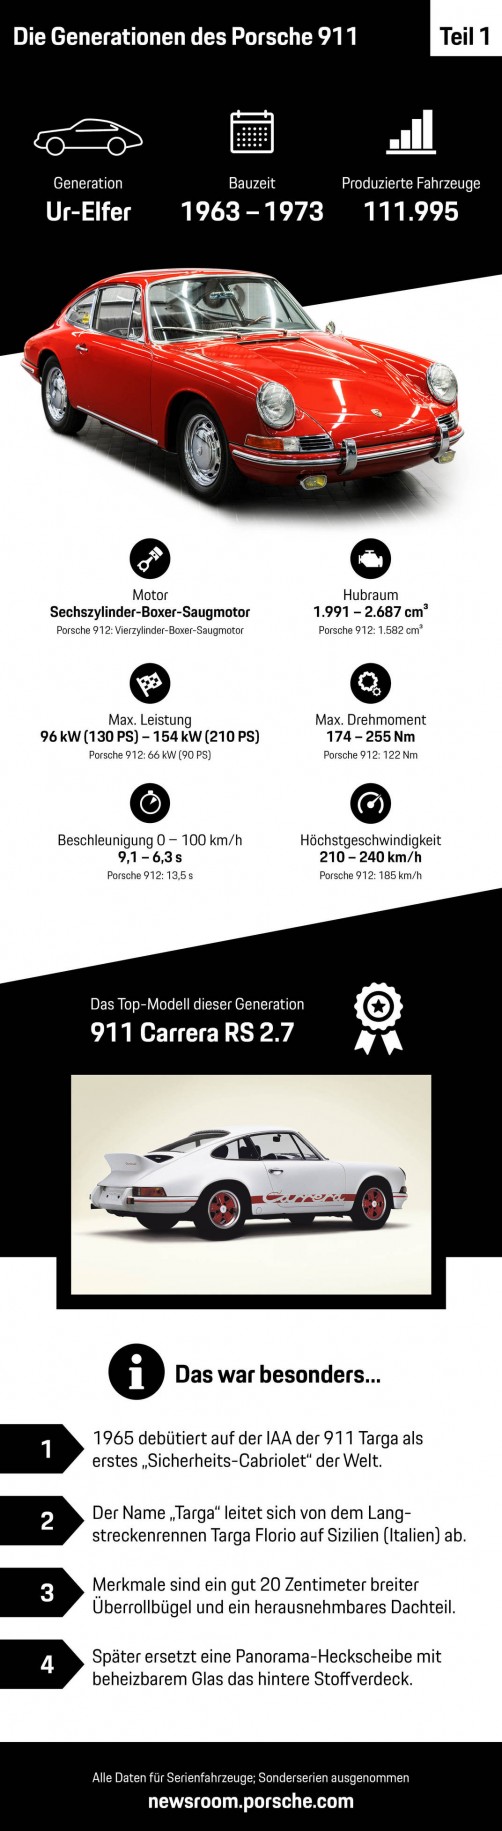 Die Geschichte des Porsche 911 der ersten Generation (1963 - 1973).  Foto: Auto-Medienportal.Net/Porsche